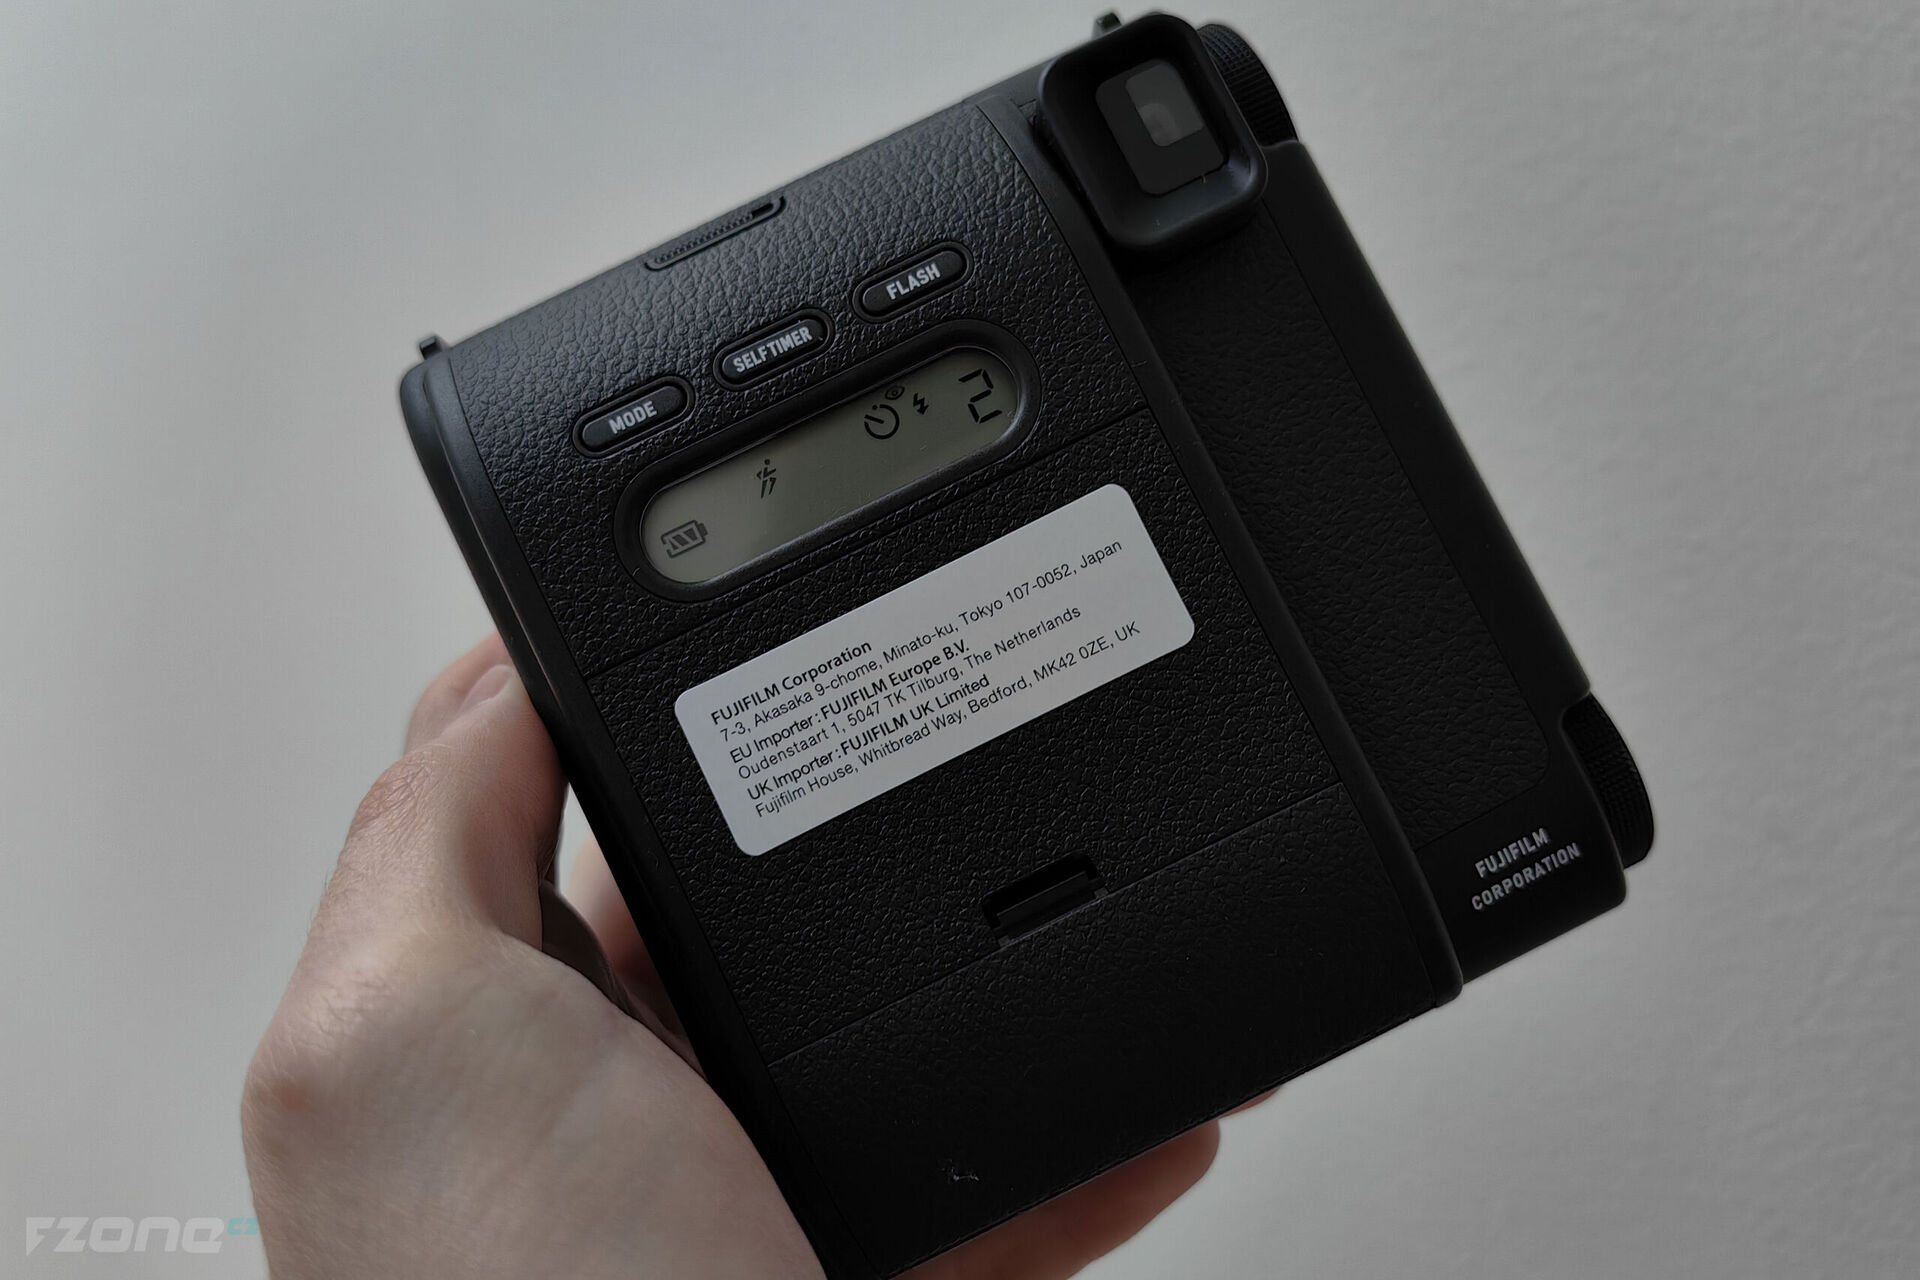 Fujifilm Instax Mini 99